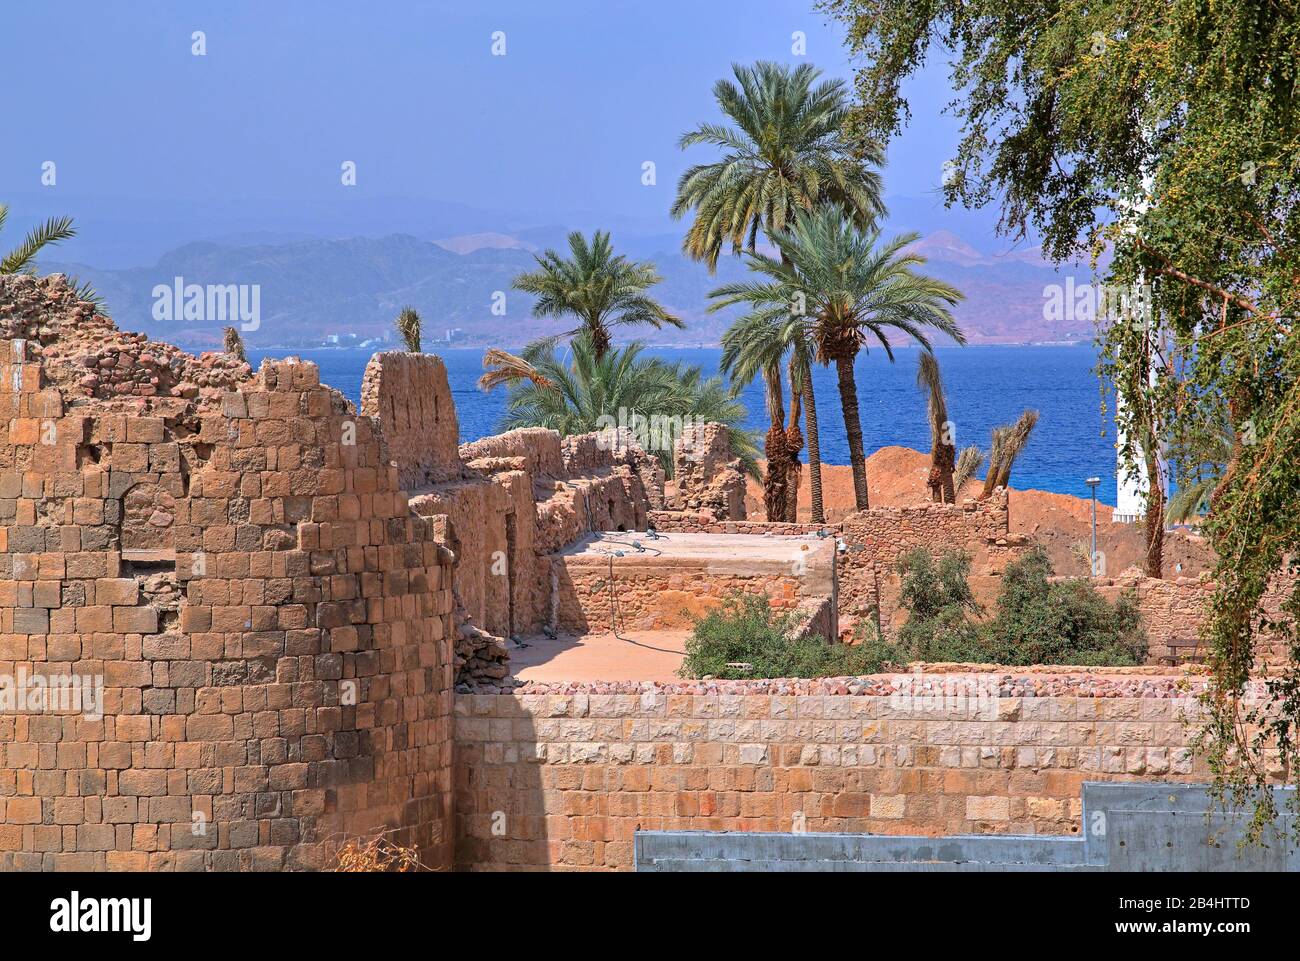 Ruines historiques du fort avec des palmiers de date près de la mer. Akaba Aqaba, Golfe D'Aqaba, Mer Rouge, Jordanie Banque D'Images